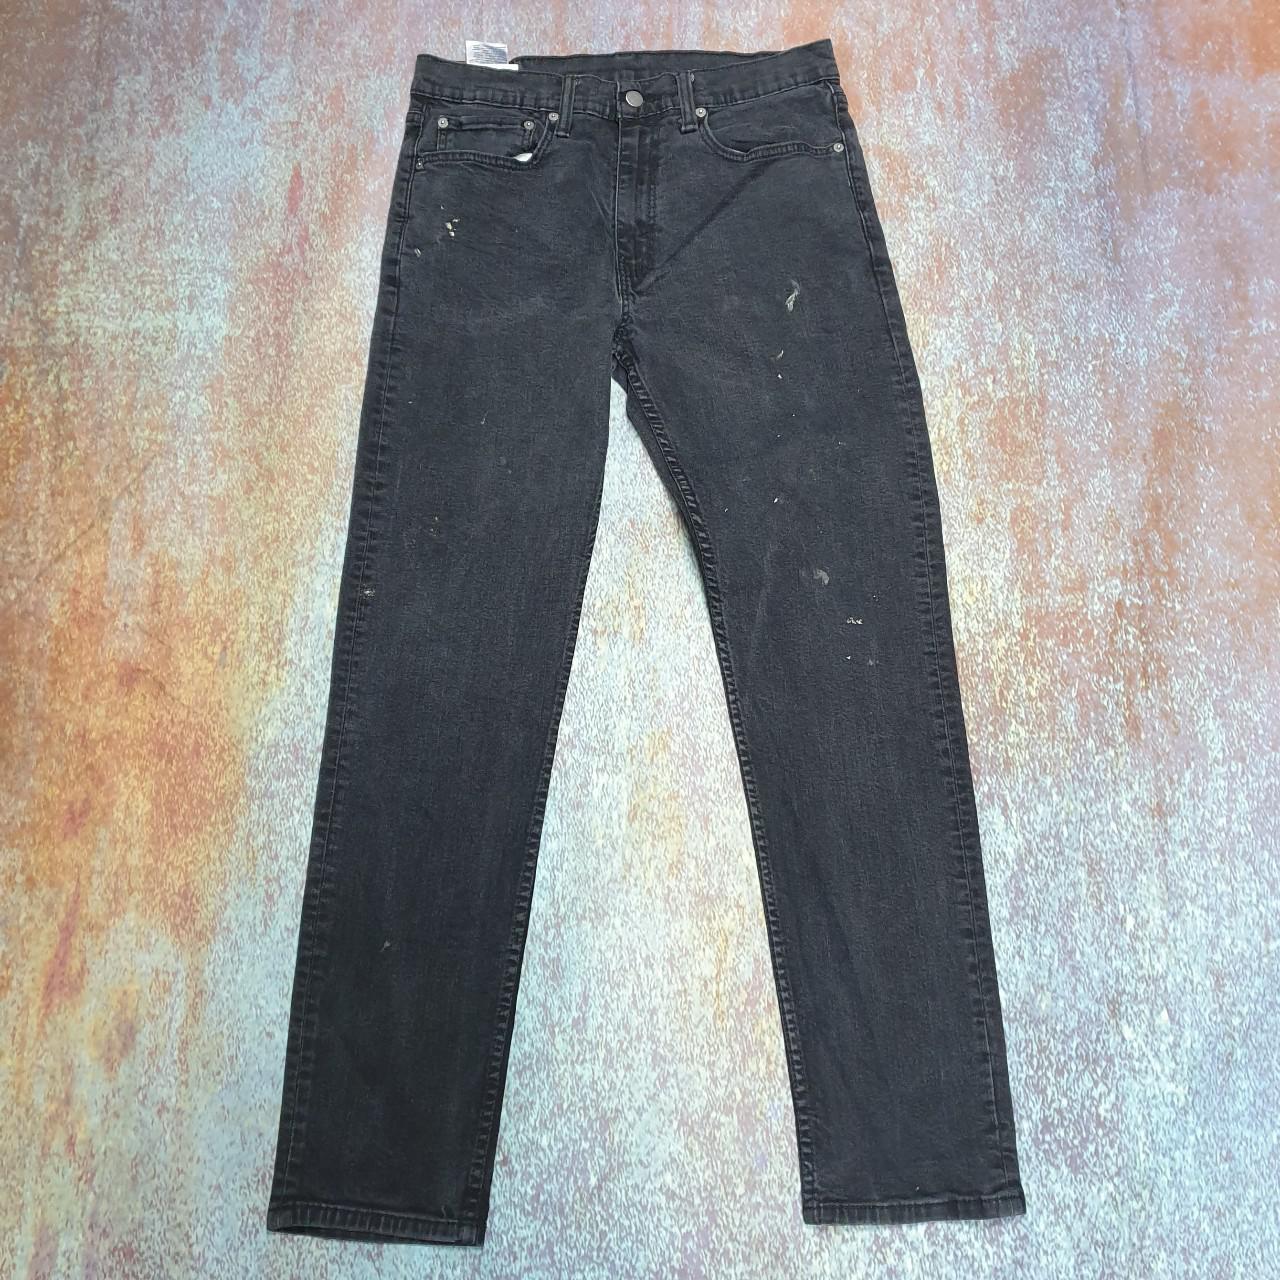 Vintage Levi's 502 TM jeans in Black Brand: Levis... - Depop